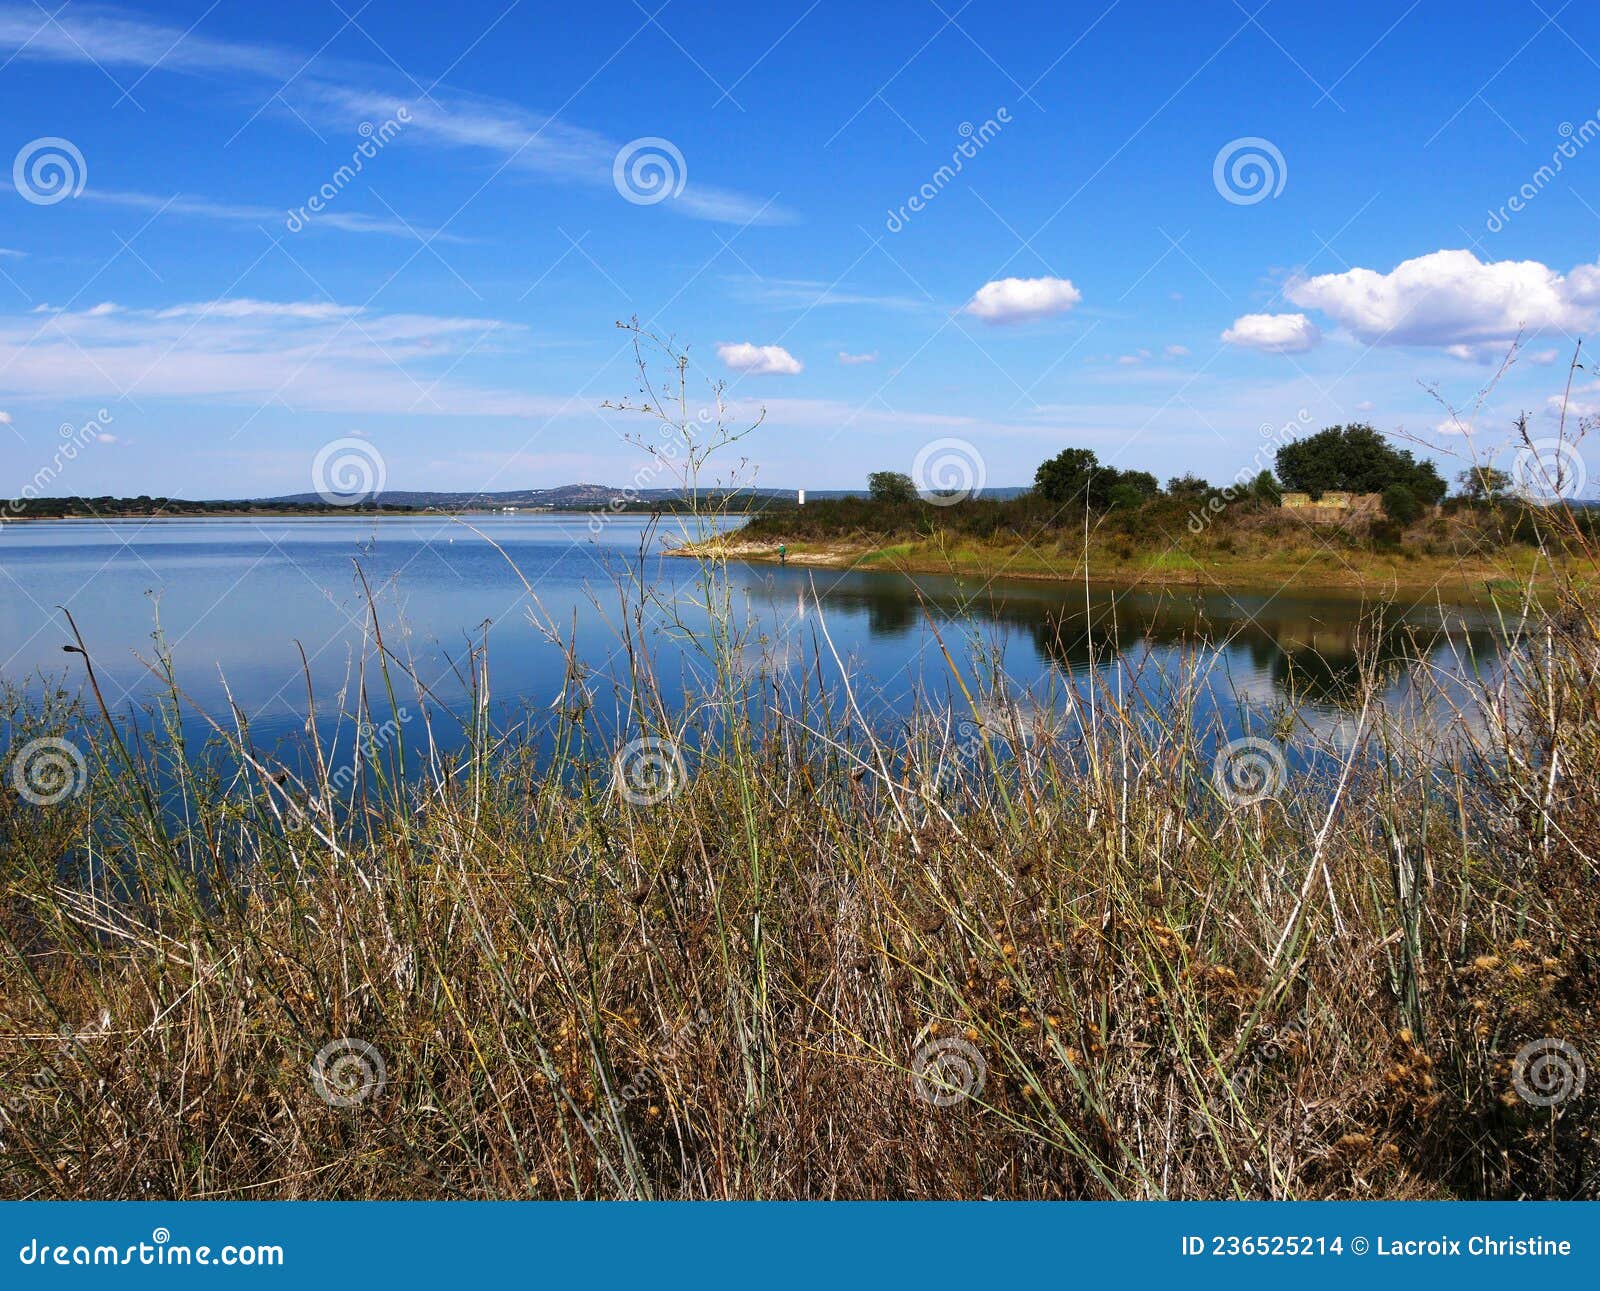 alvito reservoir lake in alentejo